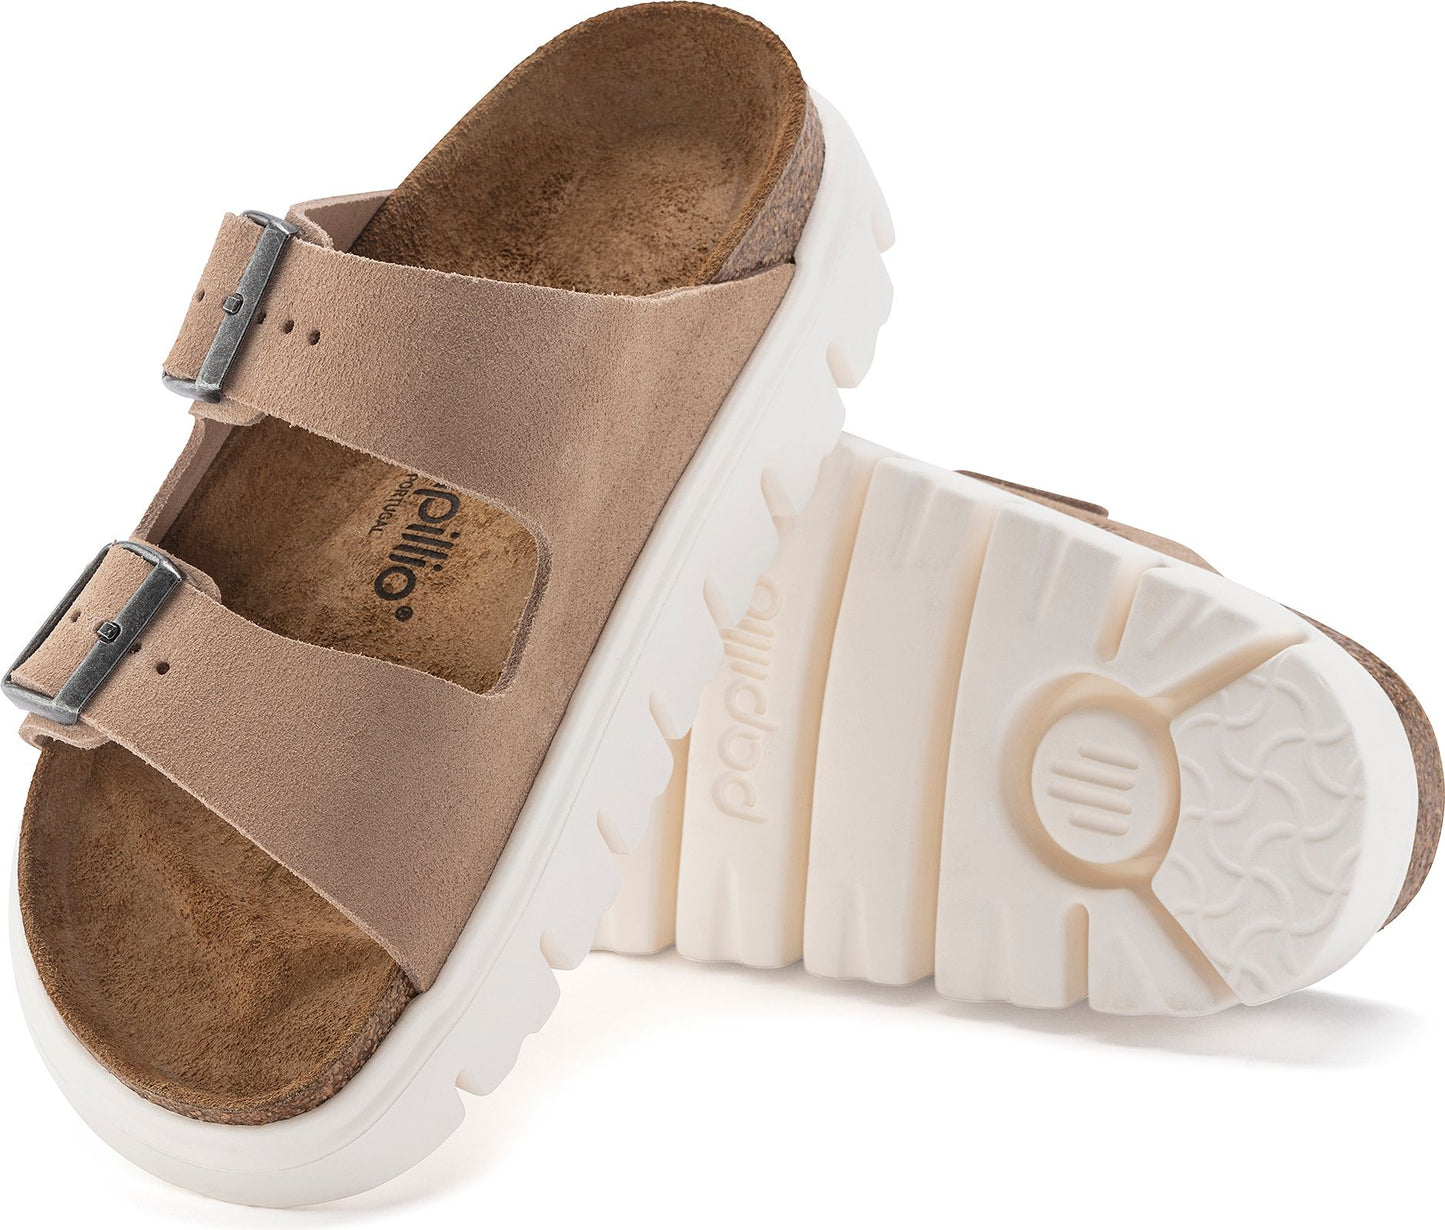 Birkenstock Sandals Arizona Chunky Beige Suede - Narrow